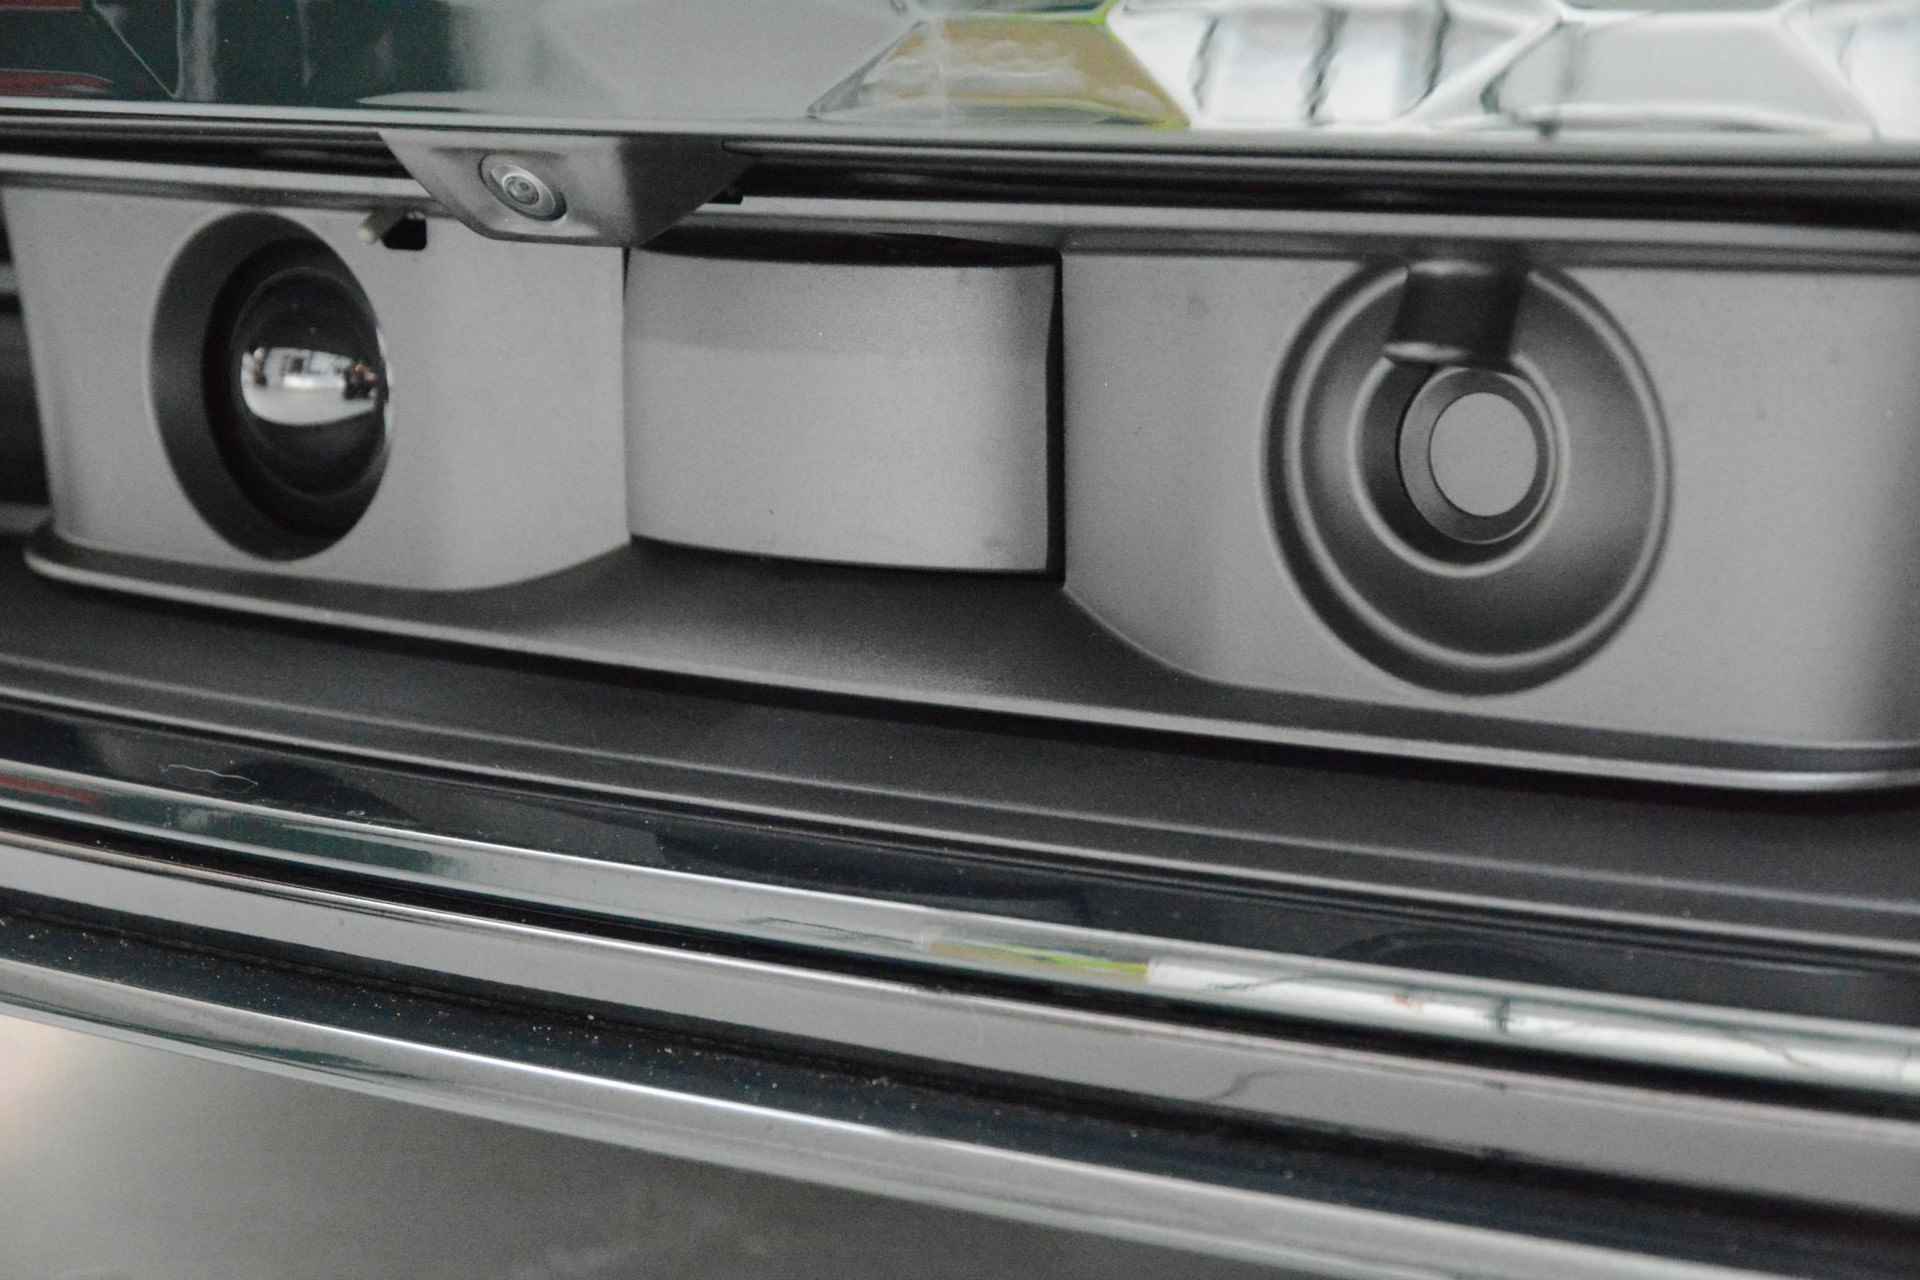 Audi e-tron GT GT Competition 93 kWh 476 PK | Nieuw | NU VAN € 143.900,00 VOOR € 123.900,00!!!! | UNIEKE KLEUR TIEFGRUN ENIGE IN NL!!! | Navigatie | Maxtrix-Laser koplampen | 360 camera | Autonome parkeerfunctie | Dynamische vierwielbesturing | Dodehoek detectie | Glazen panoramadak | Head-up display | Dynamiekpakket plus | Audi virtual cockpit plus | Stoelverwarming voor en achter | Lichtpakket plus ambient light | Optiekpakket zwart plus - 25/30